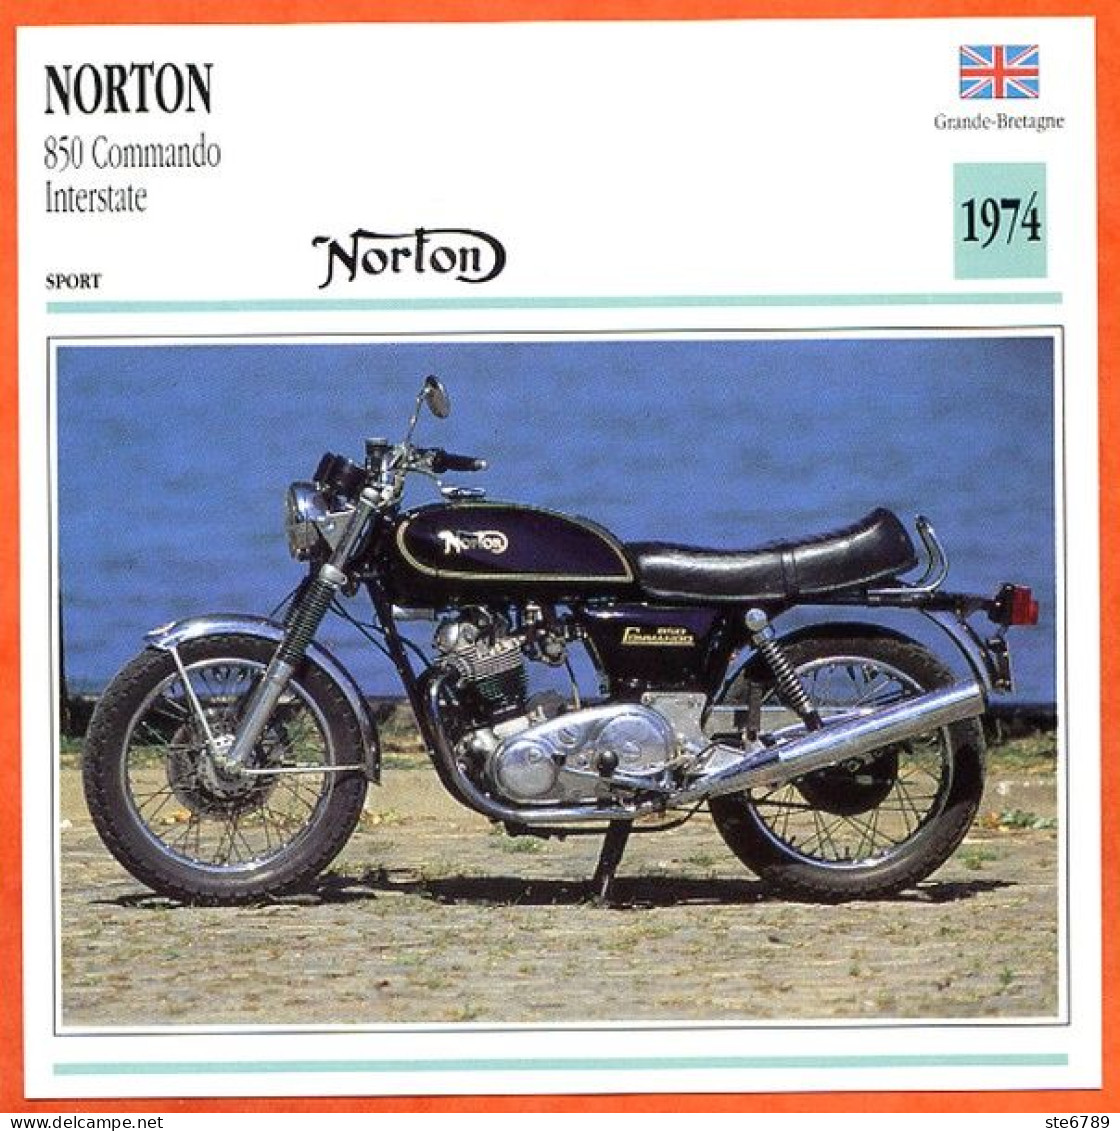 NORTON 850 Commando  1974 UK Fiche Technique Moto - Sports